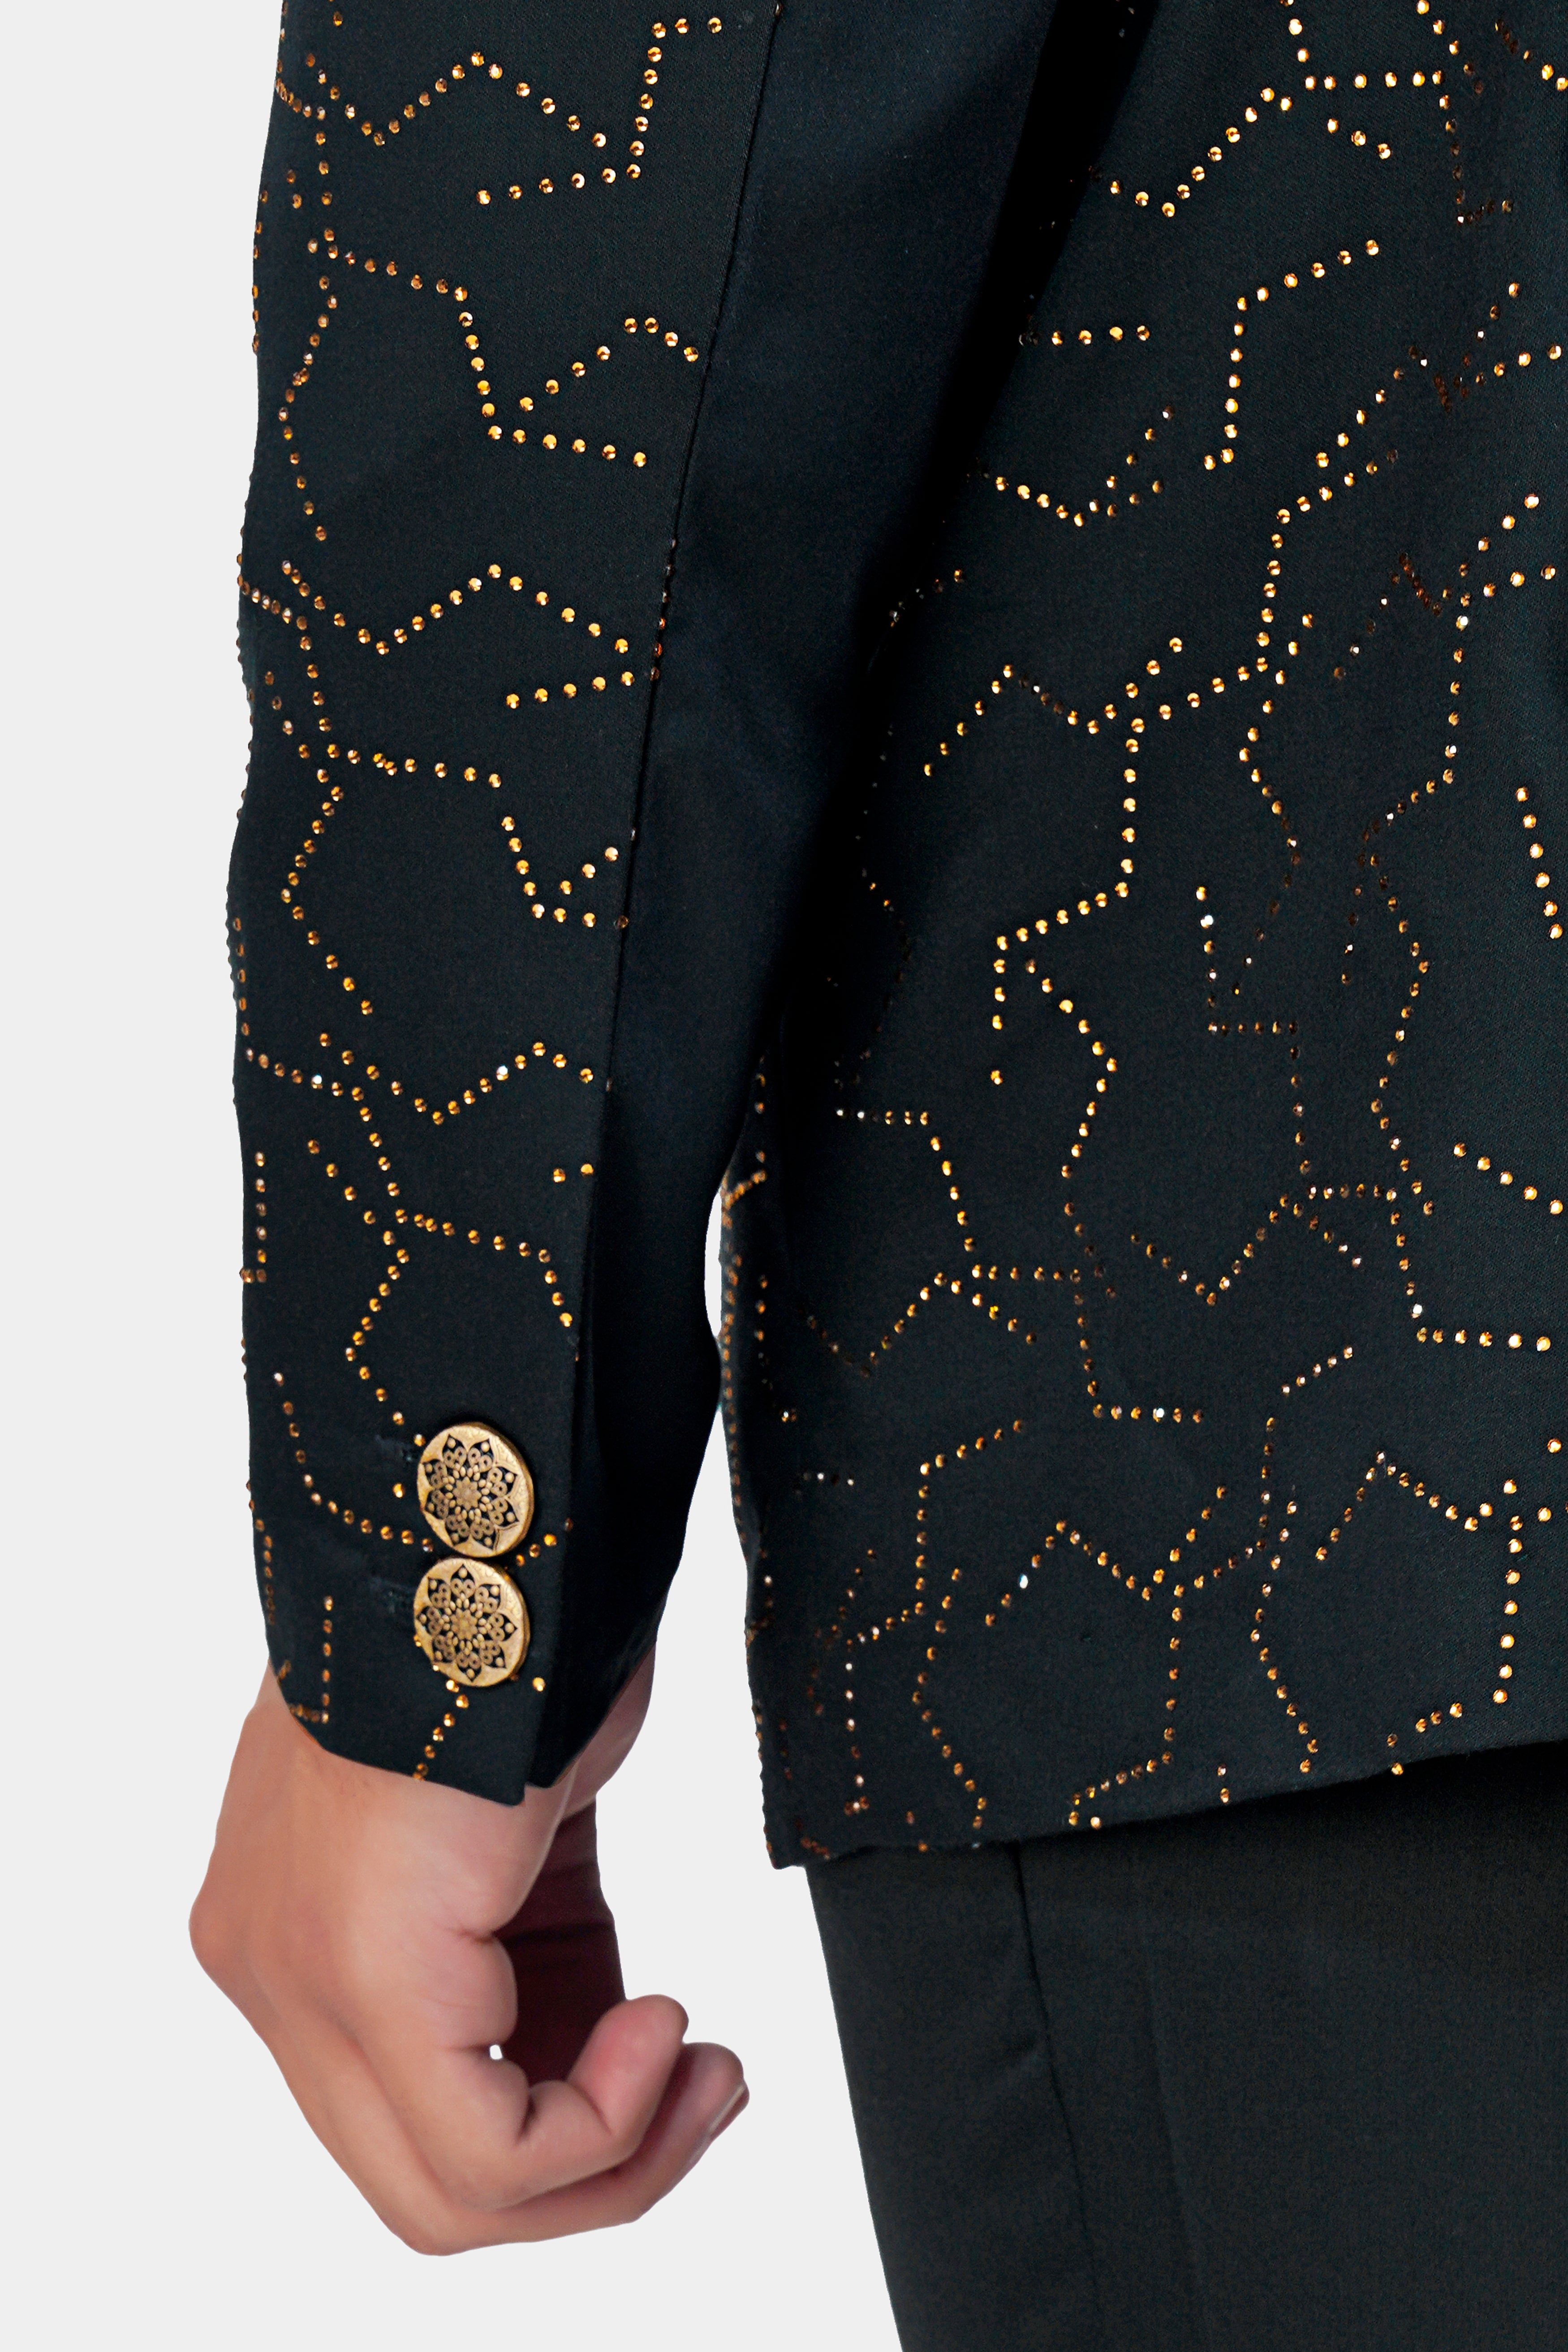 Louis Vuitton Monogram Padded Denim Jacket Indigo